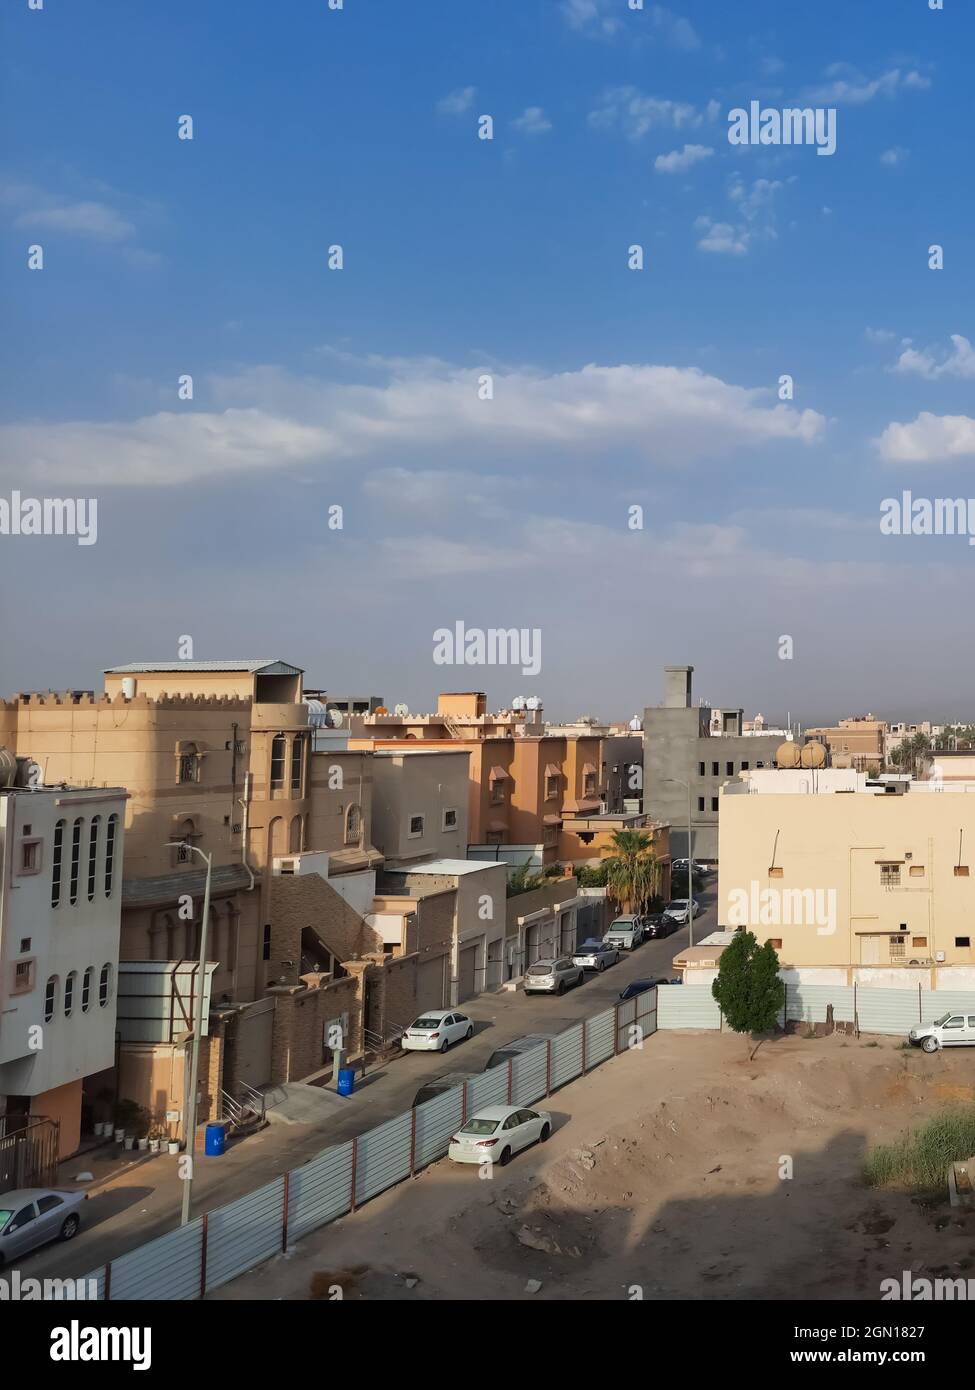 HOFUF AL HASA, SAUDI ARABIA - Aug 02, 2021: A vertical shot of a street with cars and buildings in Hofuf al Hasa, Saudi Arabia Stock Photo